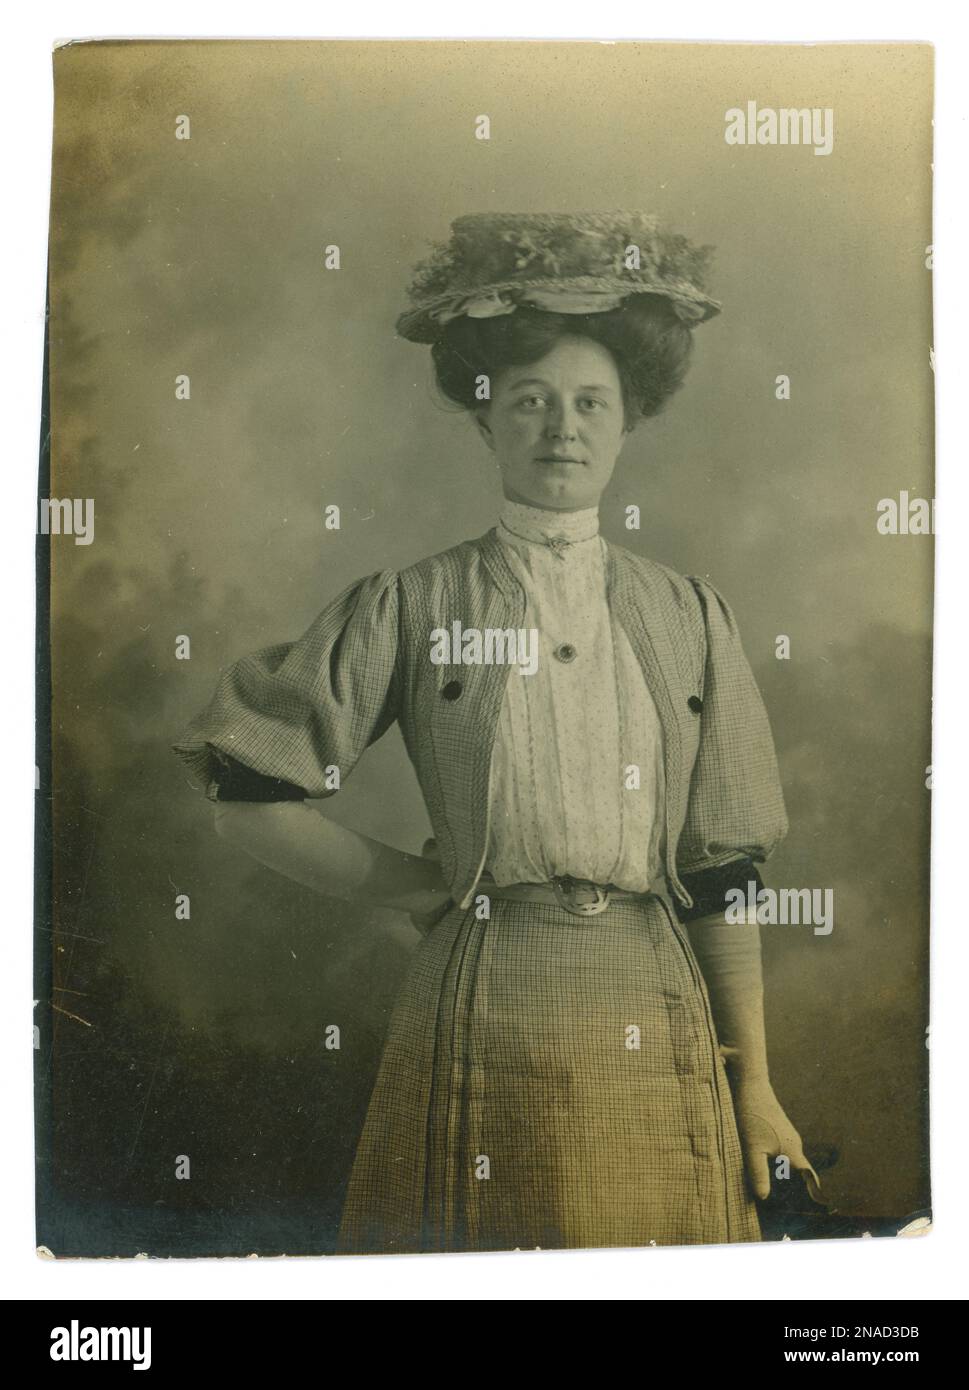 Photo Edwardian originale d'une jolie femme de classe ouvrière appelée Amy. Elle a peut-être été une femme de ménage. Elle porte un chapeau de paille, une grande coiffure, une broche de style triangle, des gants blancs, une ceinture autour d'une taille très calcaire, un chemisier d'été en coton plissé avec de petits pois, une encolure haute, une veste de type boléro avec des manches complètes au coude et une jupe assortie. En date du 5 juin 1907. Banque D'Images